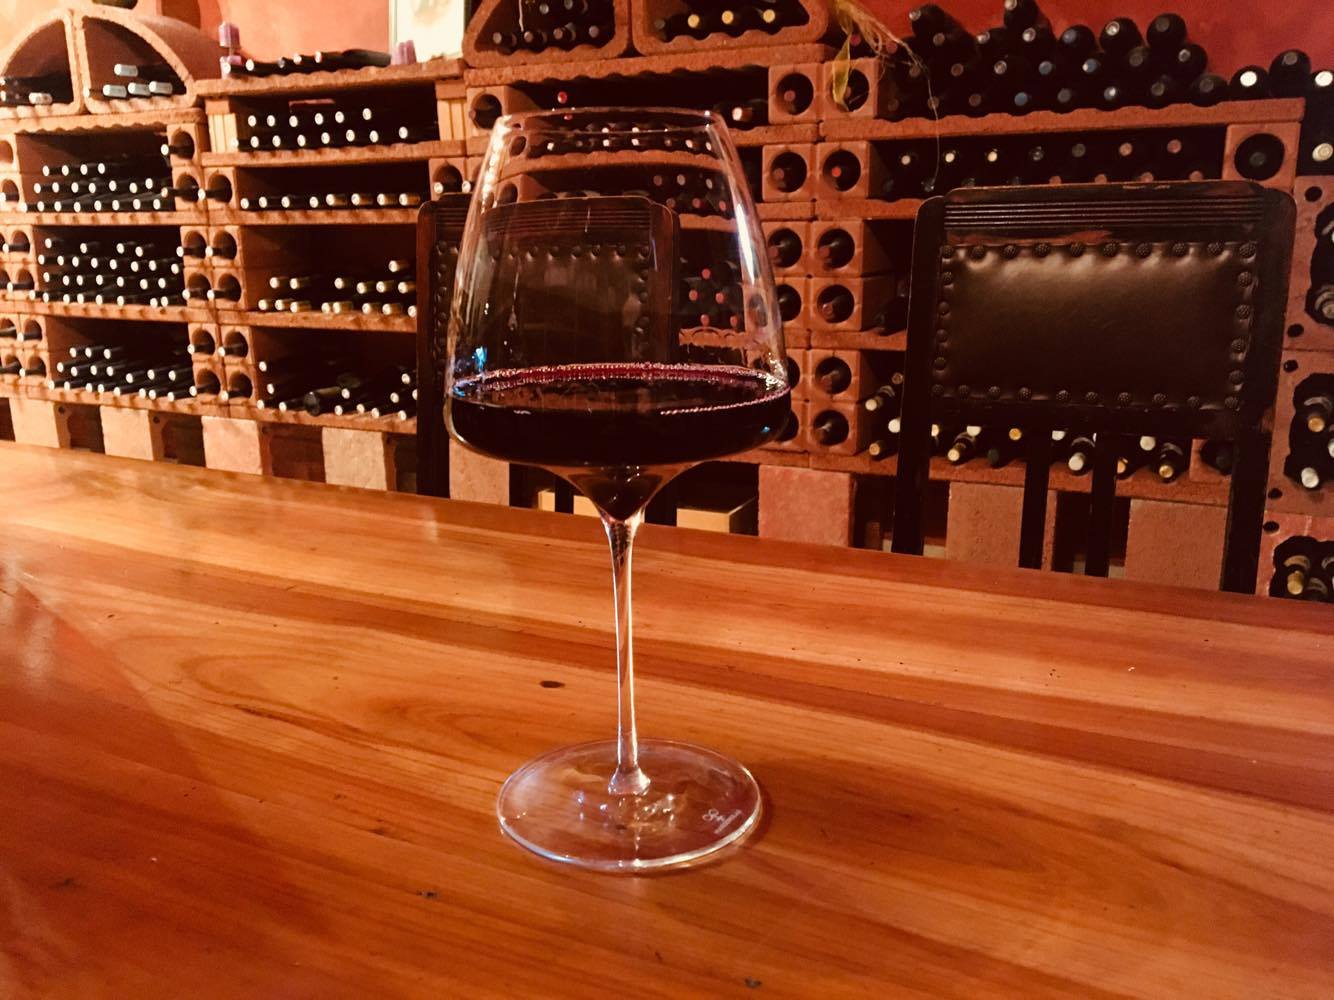 Ein Glas mit Rotweins steht auf einem Holztisch, dahinter zwei Stühle mit Lederbezug. Im Hintergrund ein Weinregal aus gebranntem Tonelementen in dem verschiedene Flaschen lagern.